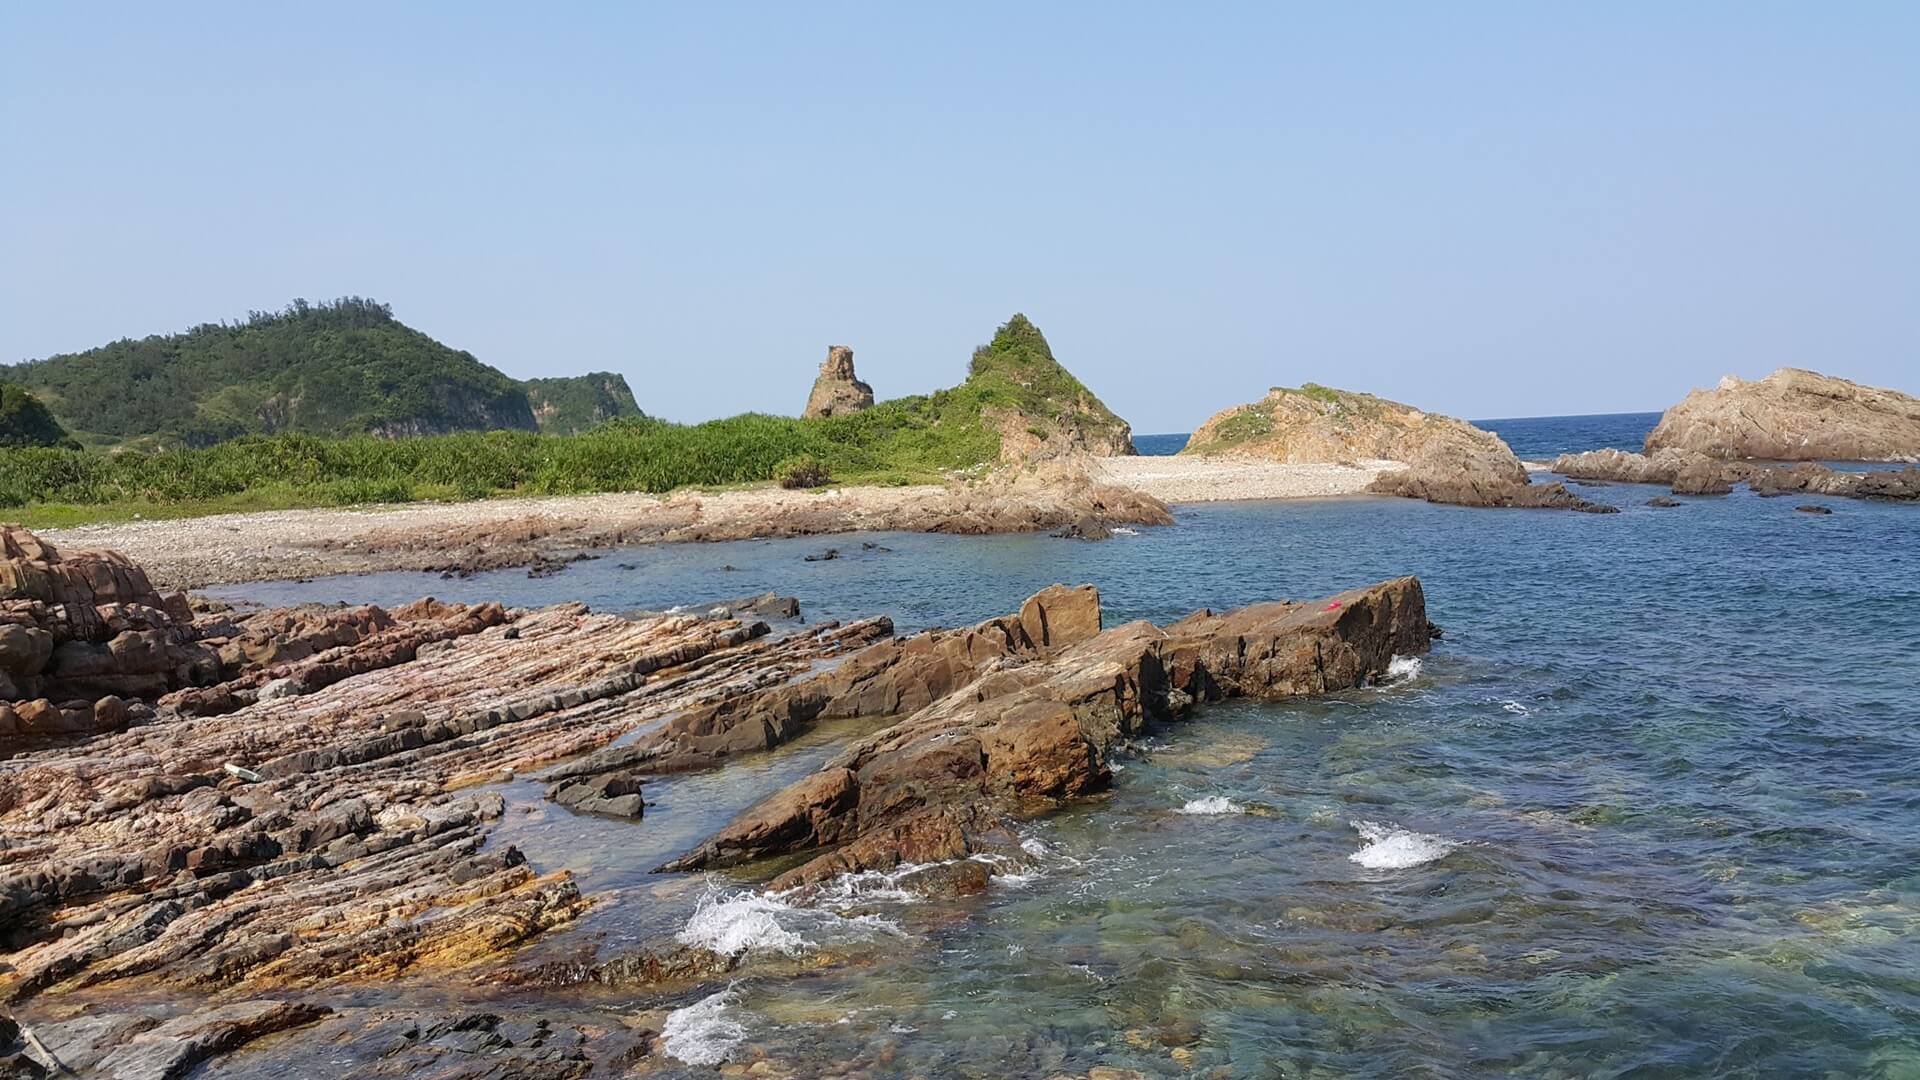 Phát hiện bãi đá hoang sơ ngay vùng biển miền Bắc, là nơi đón bình minh cực đẹp, cách Hà Nội hơn 200km - ảnh 5